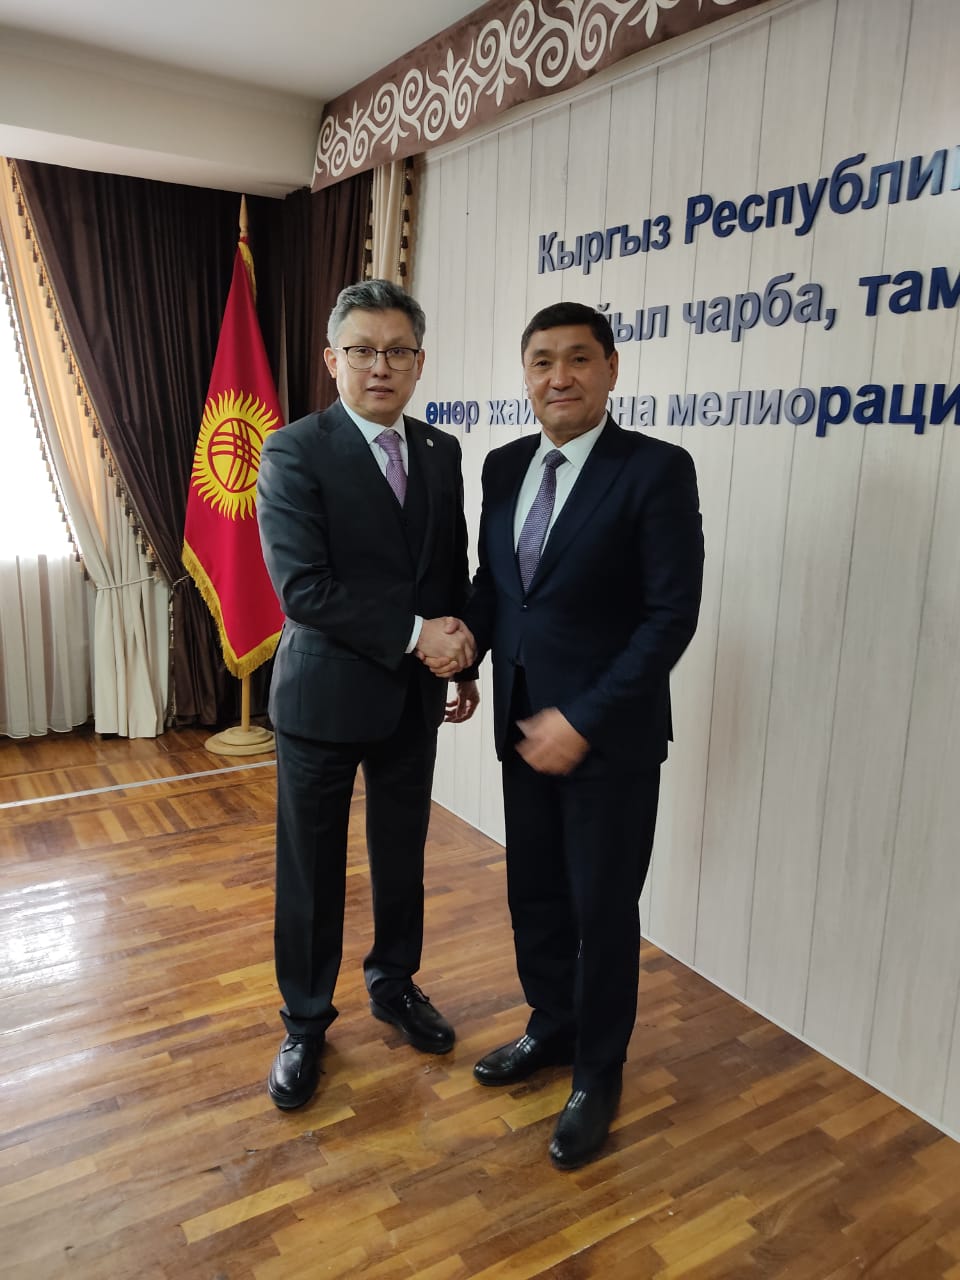 Нур-Султан и Бишкек договариваются о промышленной кооперации по переработке сельхозпродукции